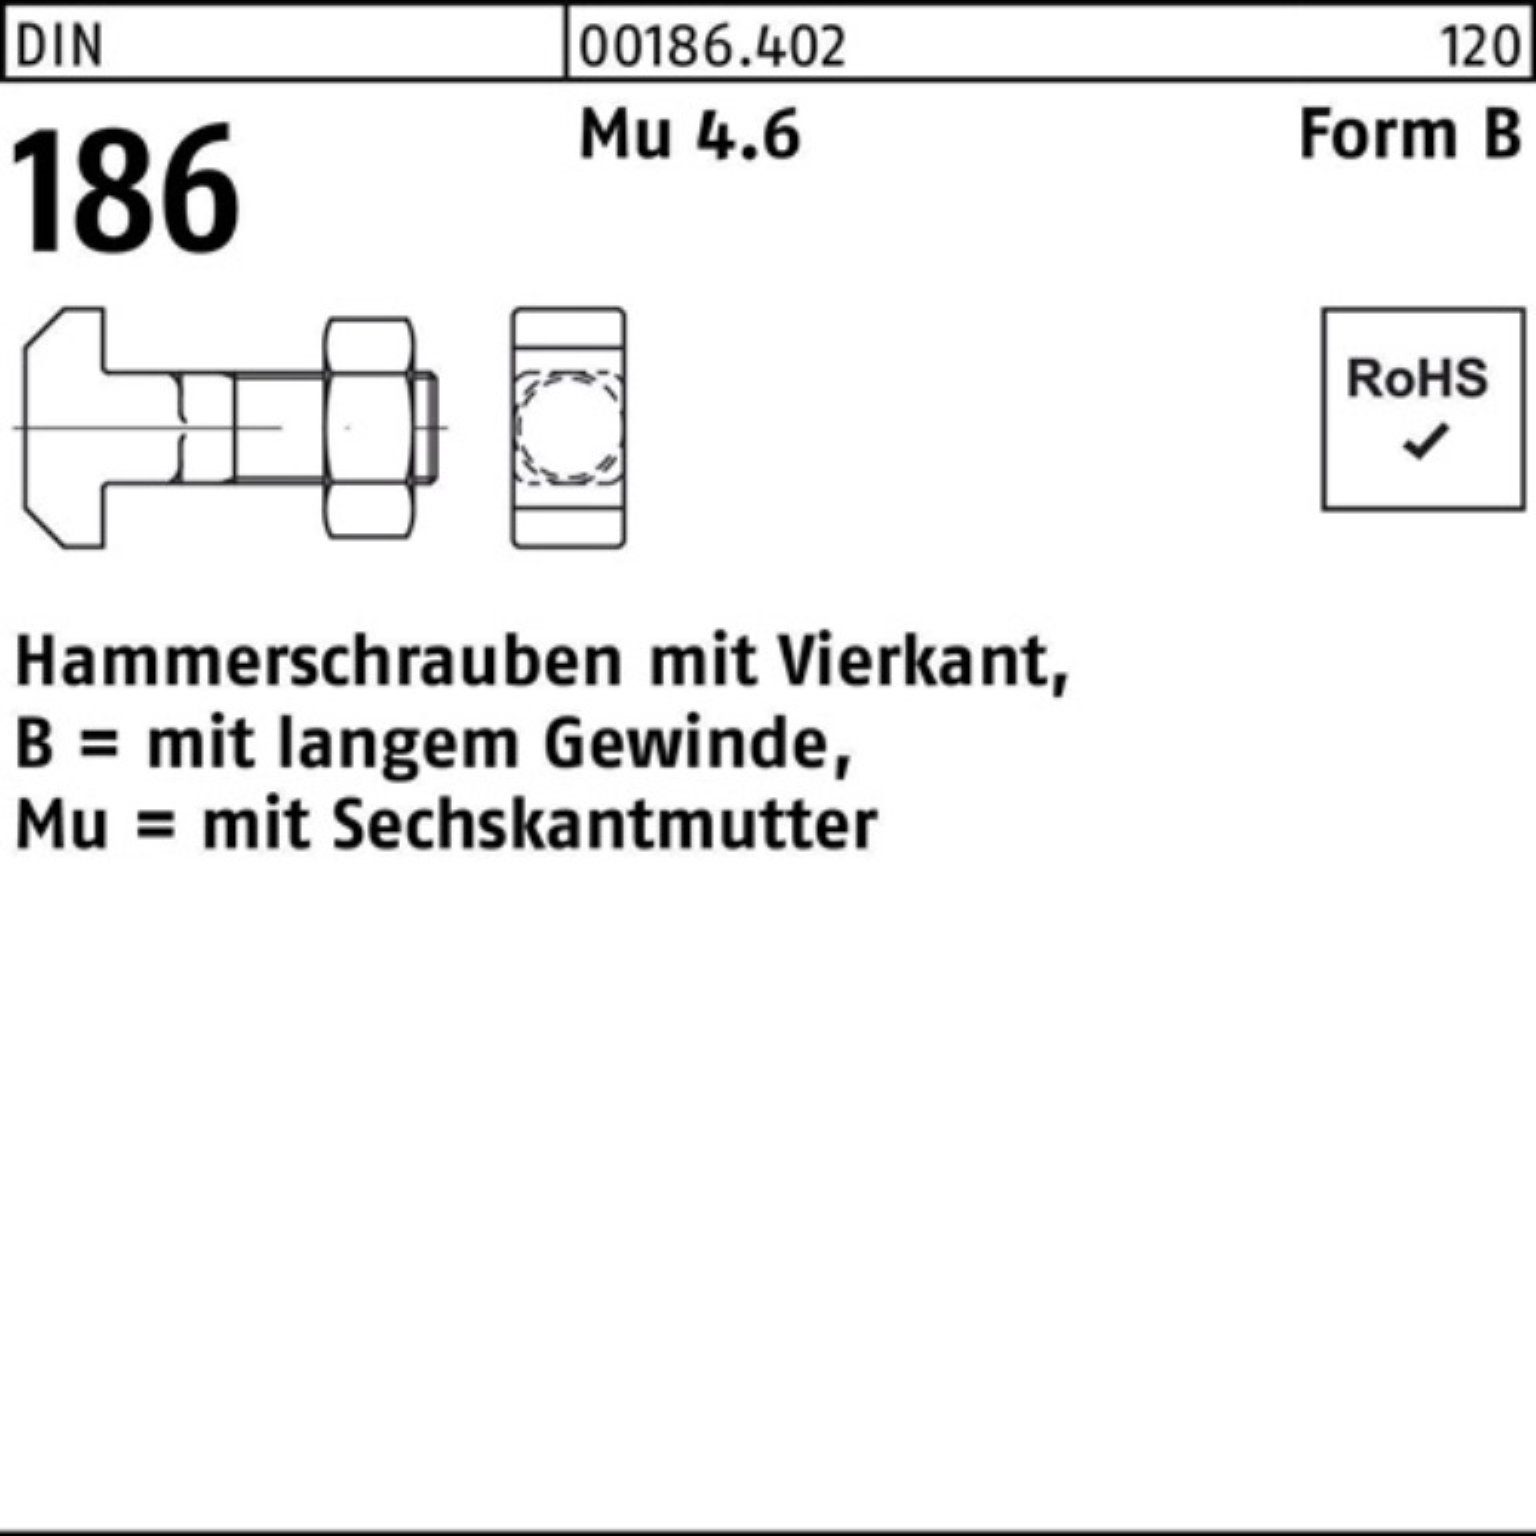 Schraube 186 FormB 100er 6-ktmutter 40 Hammerschraube Reyher DIN Vierkant BM Pack 16x